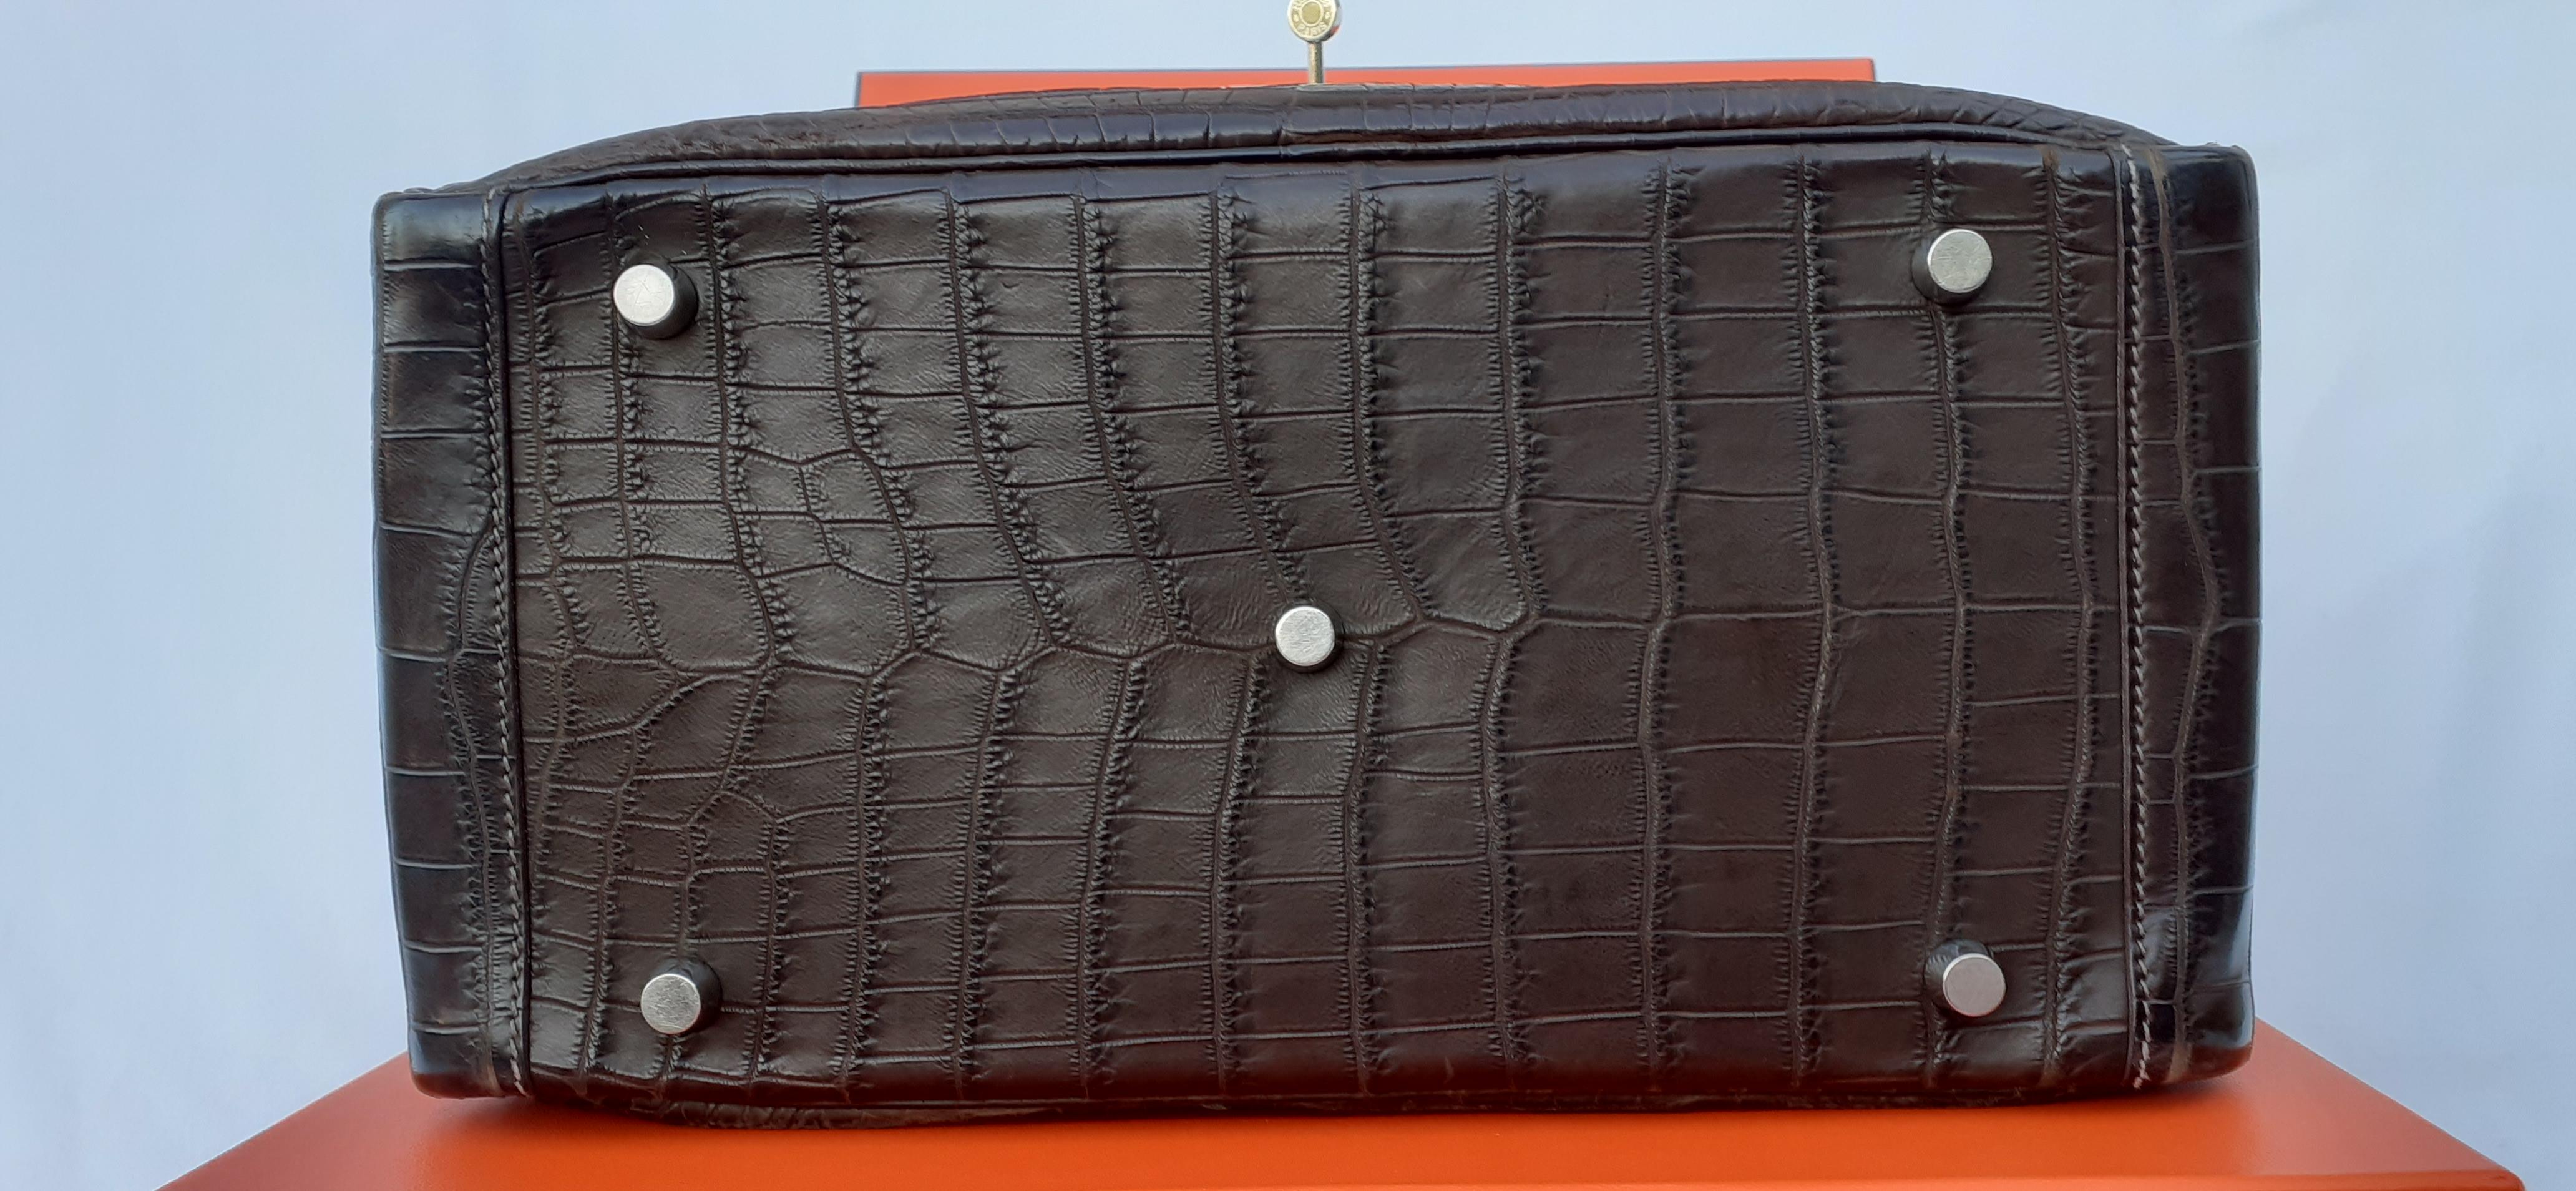 Exceptional Hermès Lindy Hand Bag Mat Gris Elephant Crocodile Phw 30 cm 4